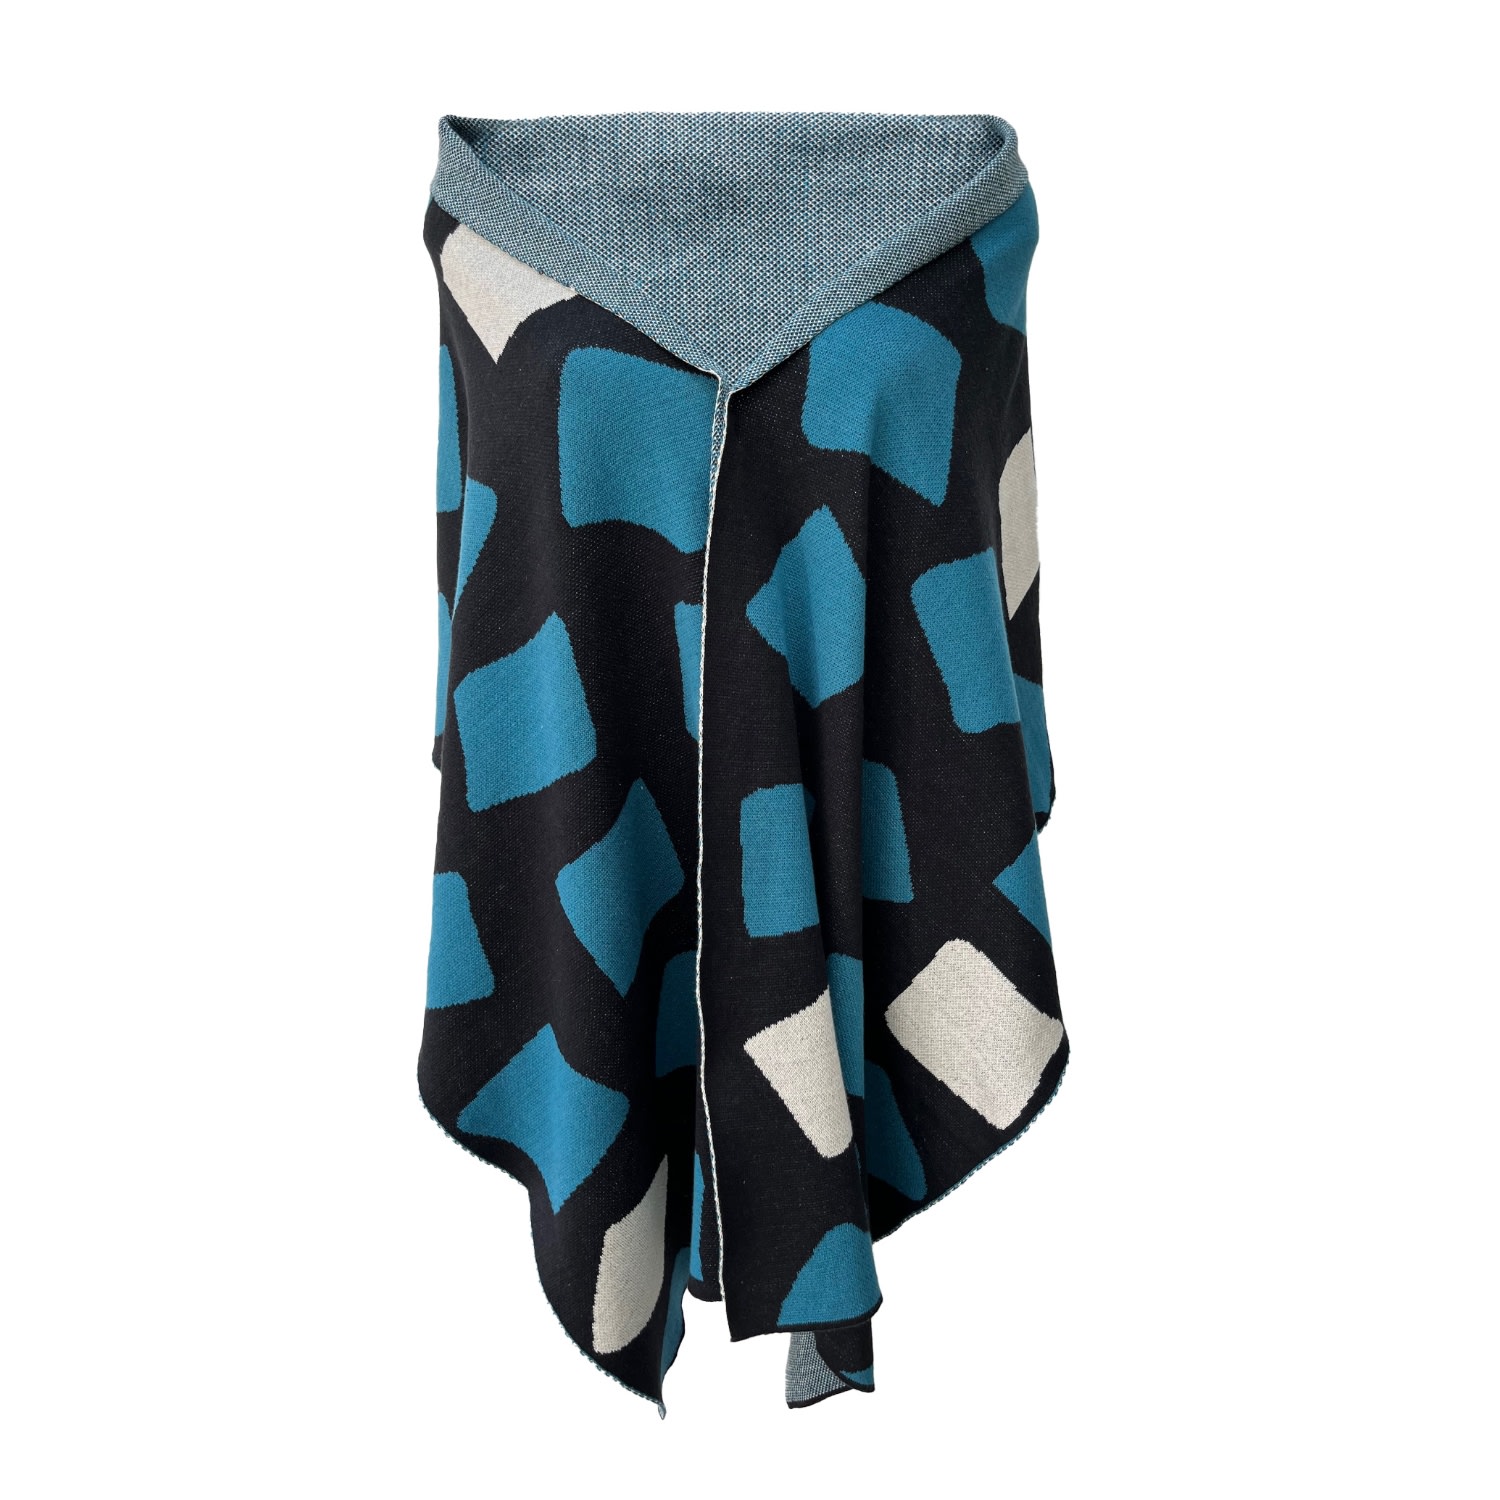 Women’s Black / Blue / White Irregular Square Cotton Knitted Scarf - Kingfisher Blue, Black & Ivory One Size Sisu Sisu